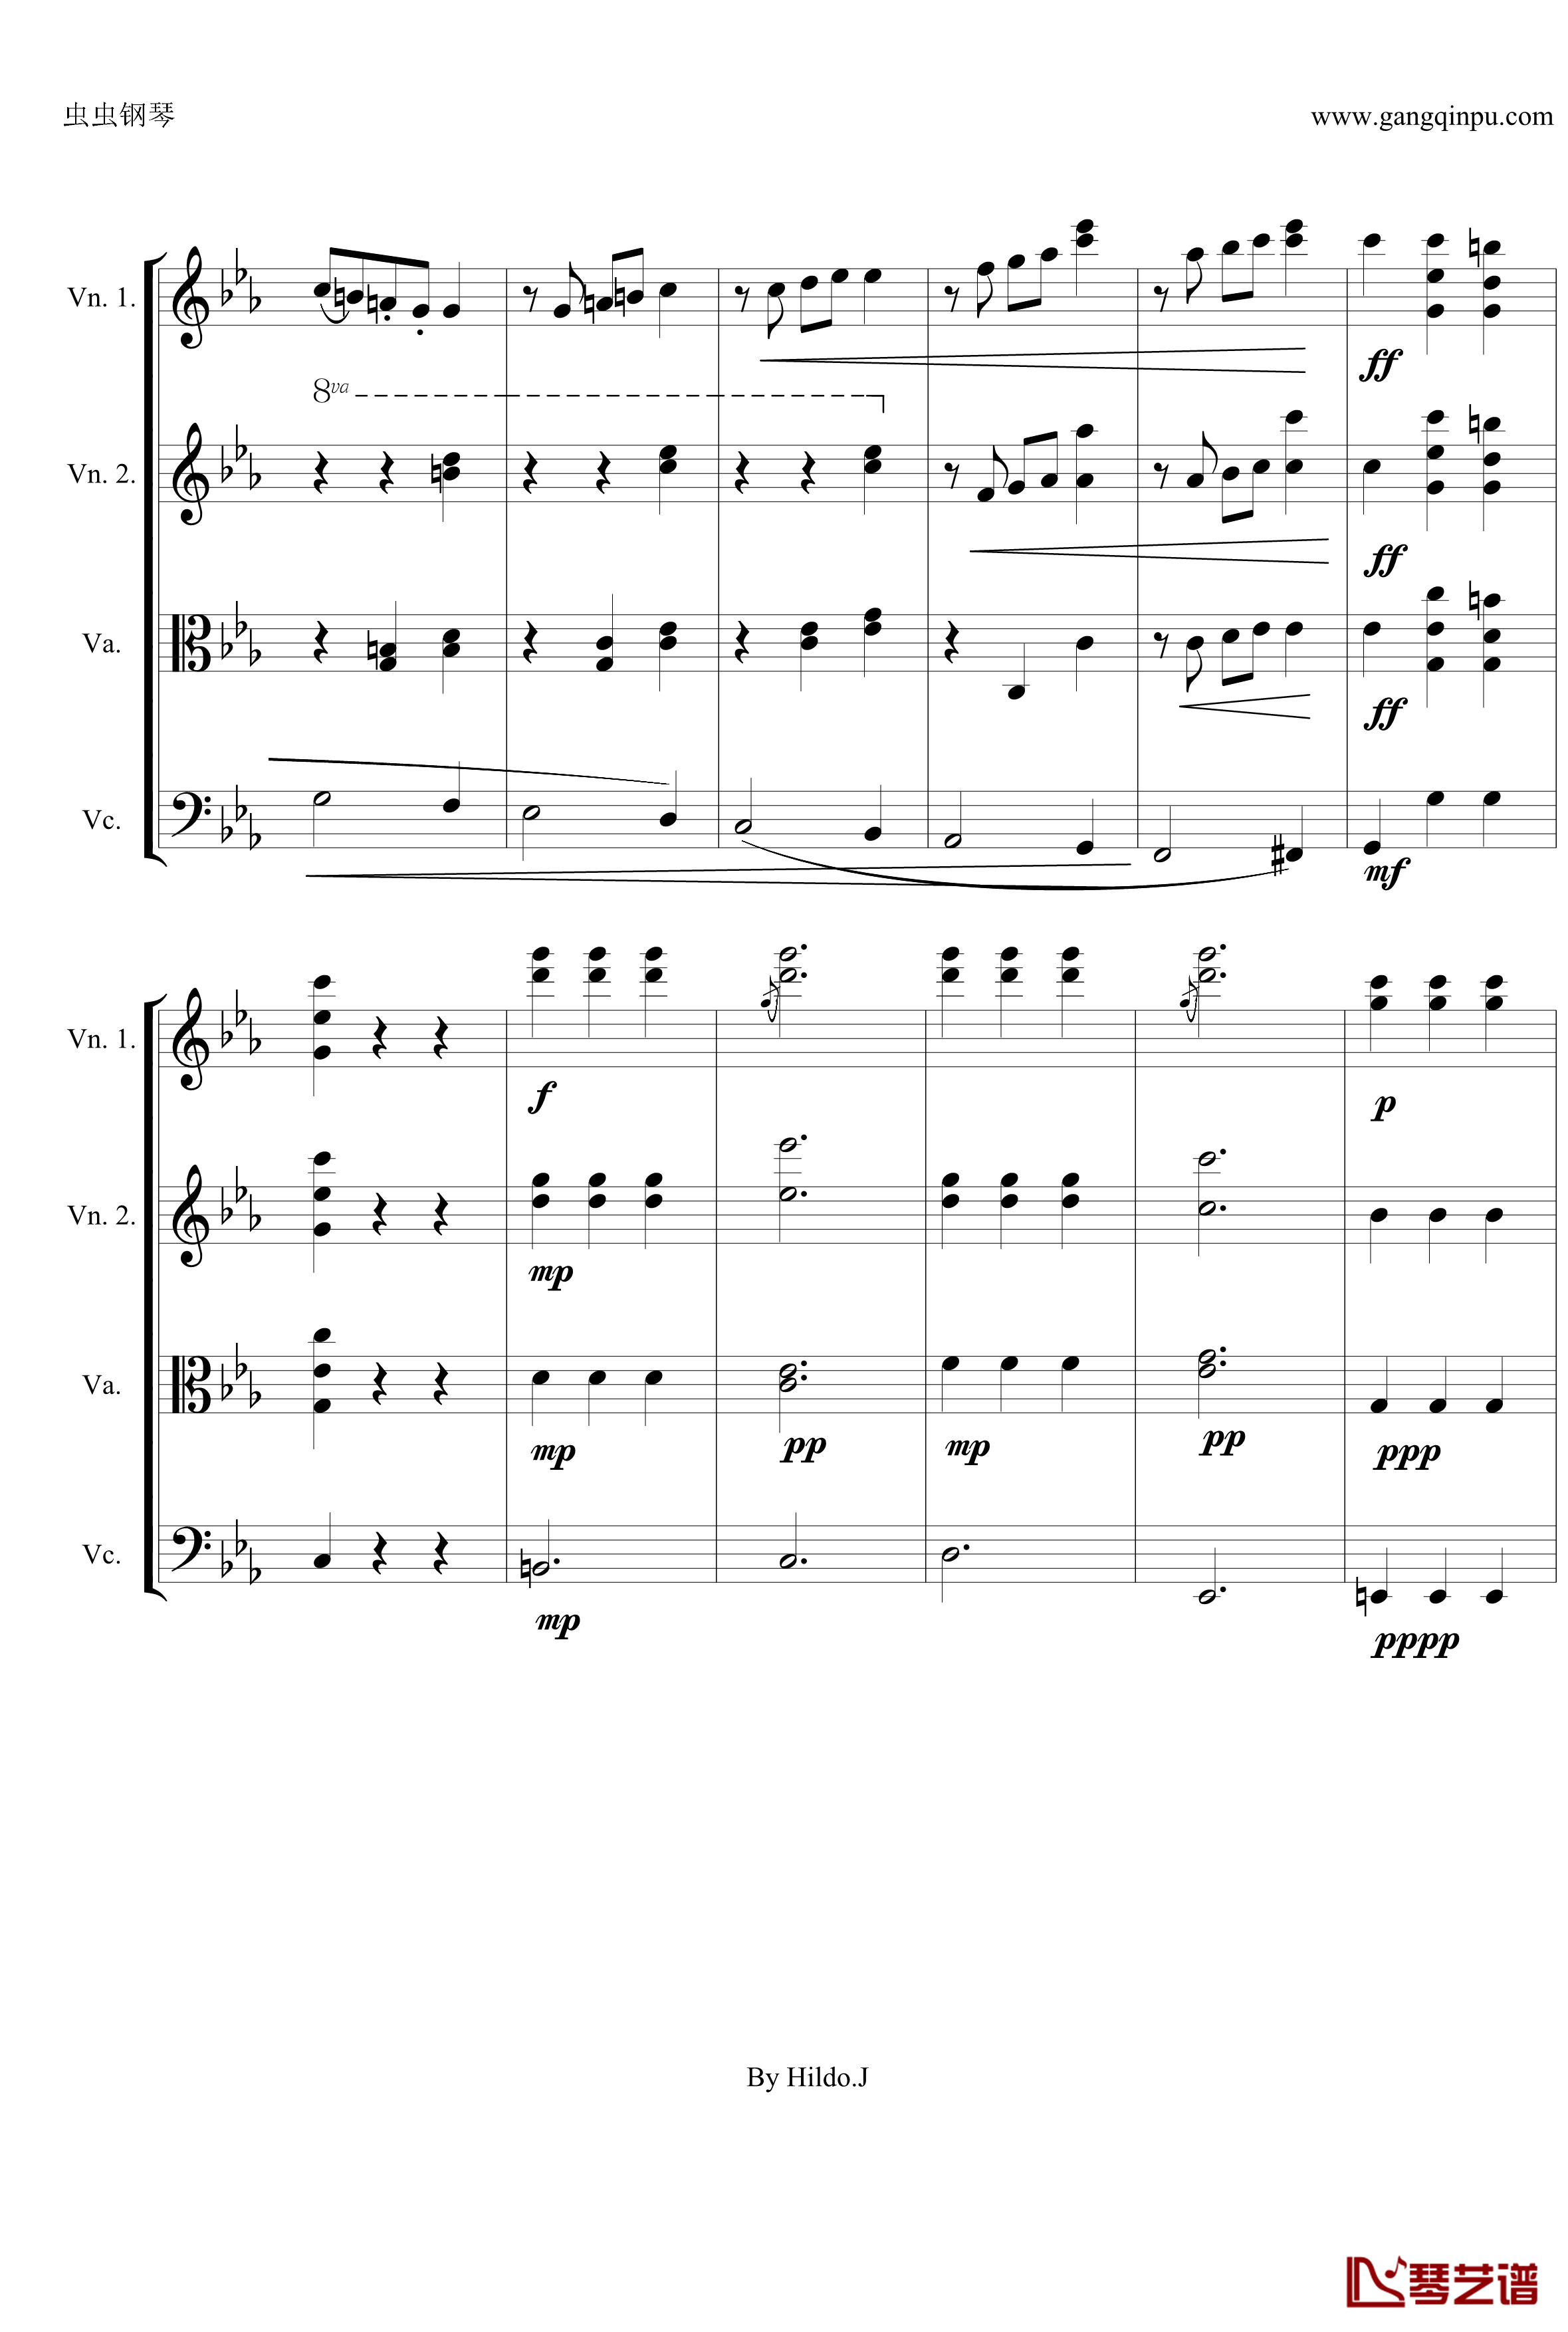 命运交响曲第三乐章钢琴谱-弦乐版-贝多芬-beethoven10